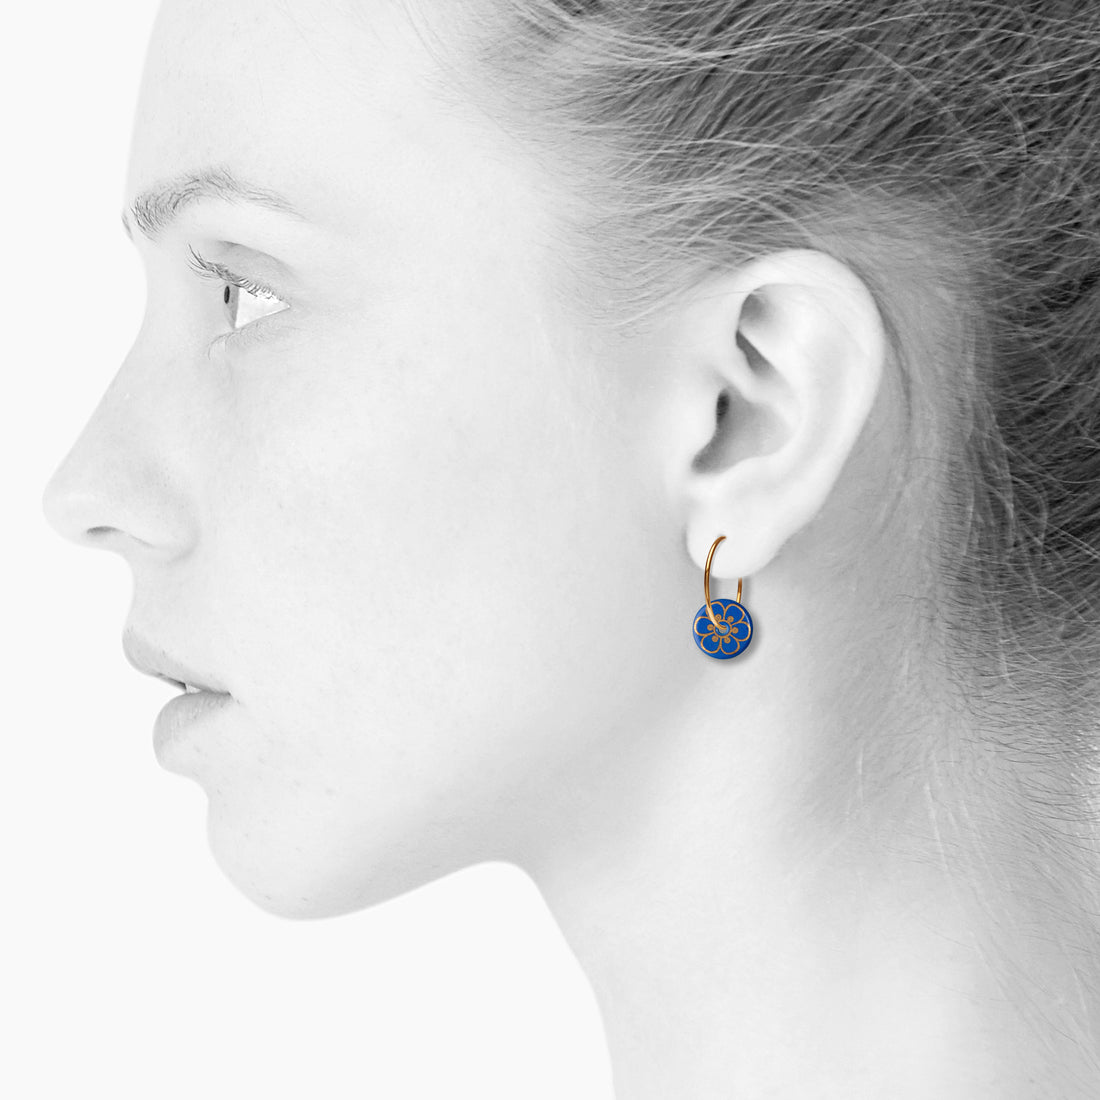 FLORA øreringe - ROYAL BLUE/GOLD - SCHERNING smykker